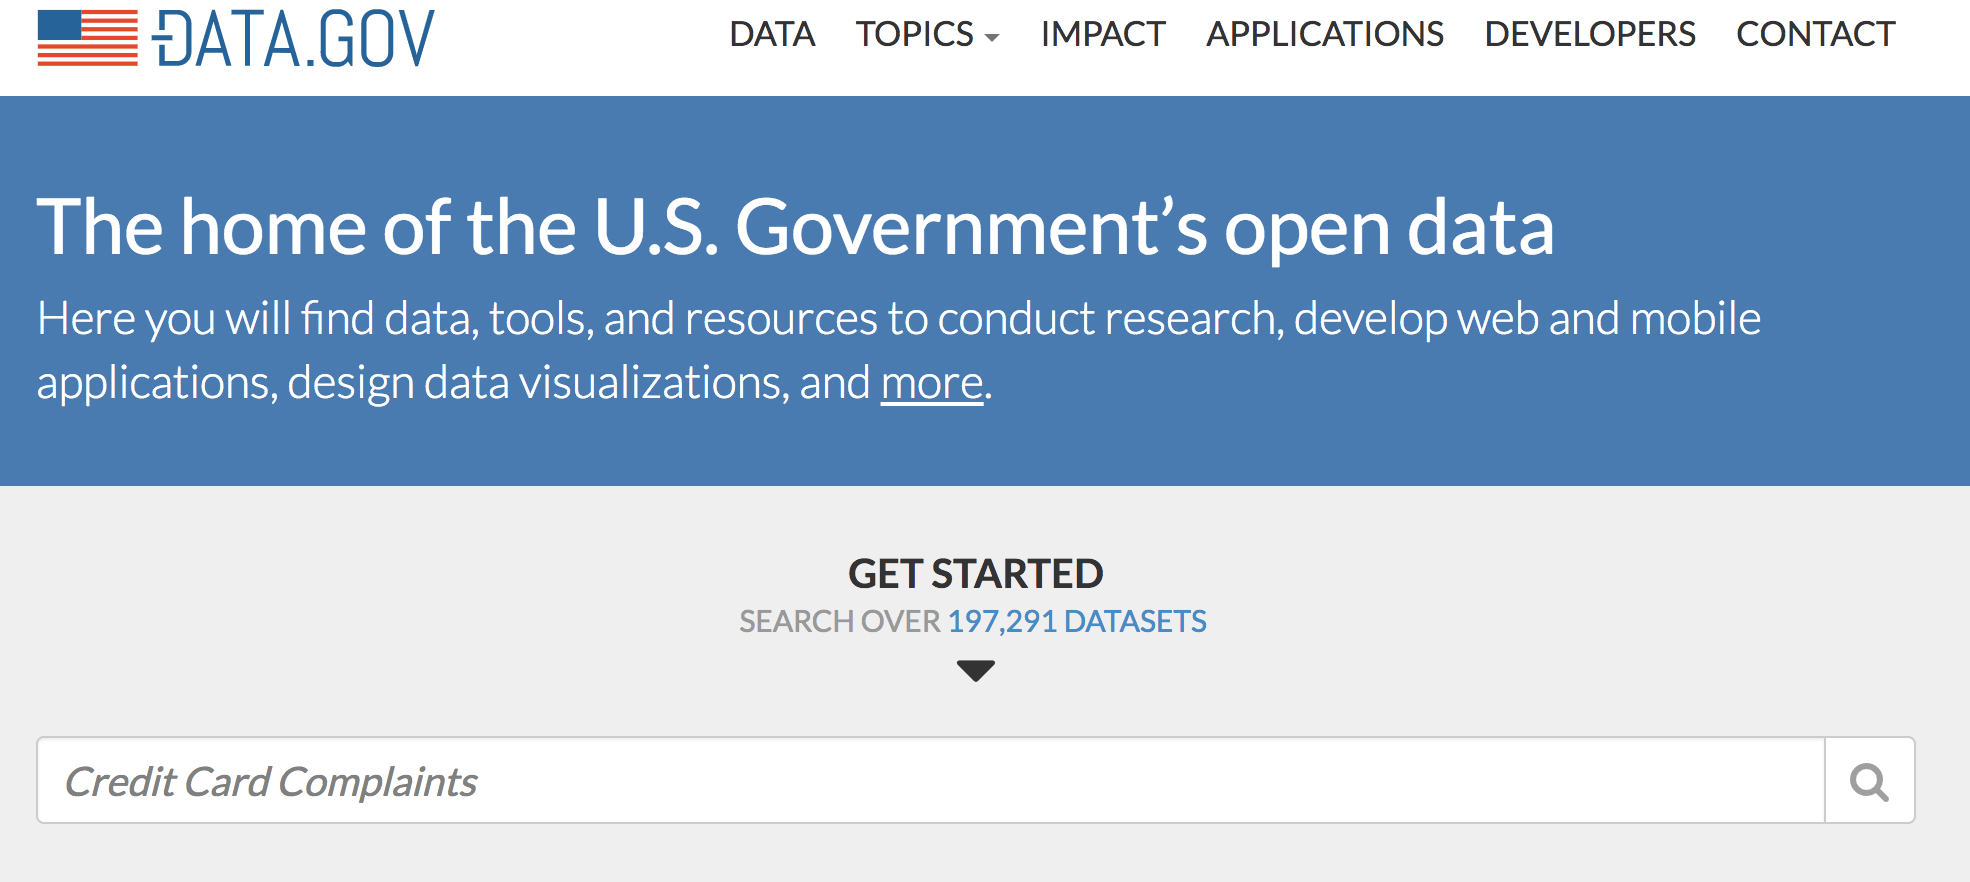 Https data gov ru. Data gov gov gov. Data.gov.ru. Find data. Data gov поиск.